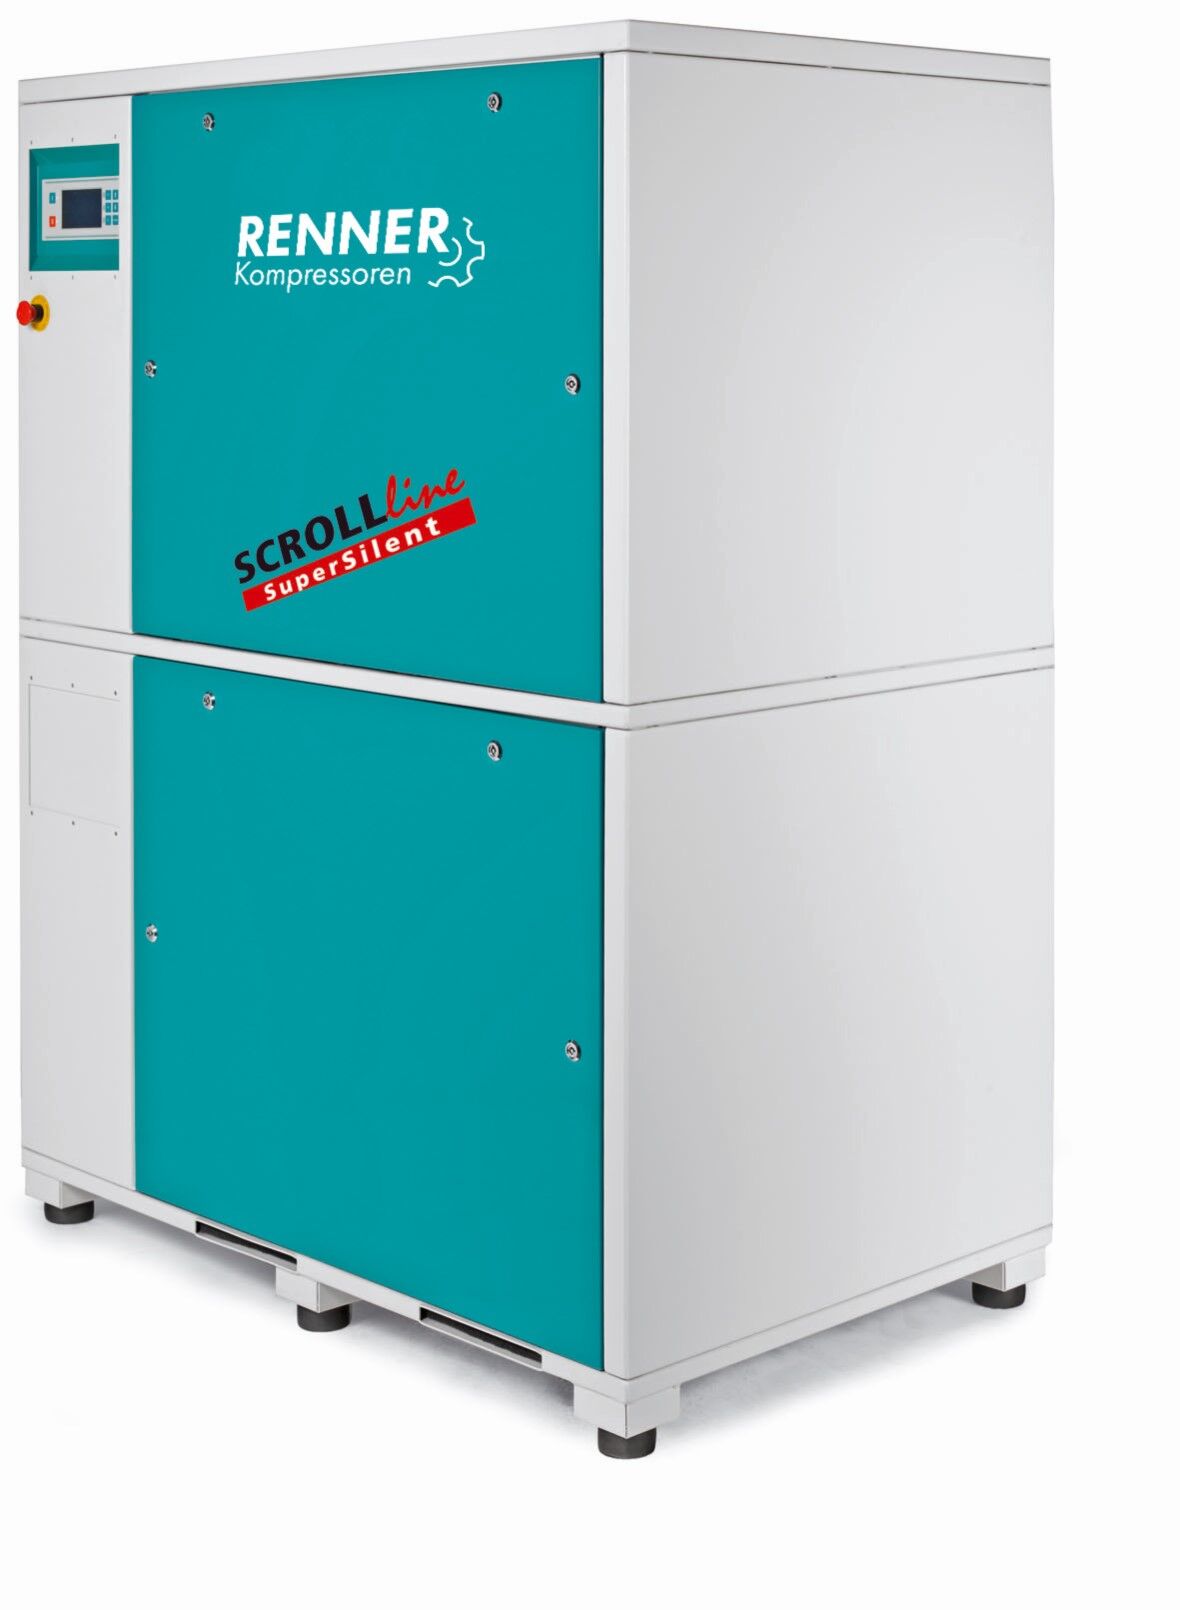 RENNER-Kompressor SLM-S 11,0 als Mehrfachanlage- SuperSilent ölfreier Scrollkompressor